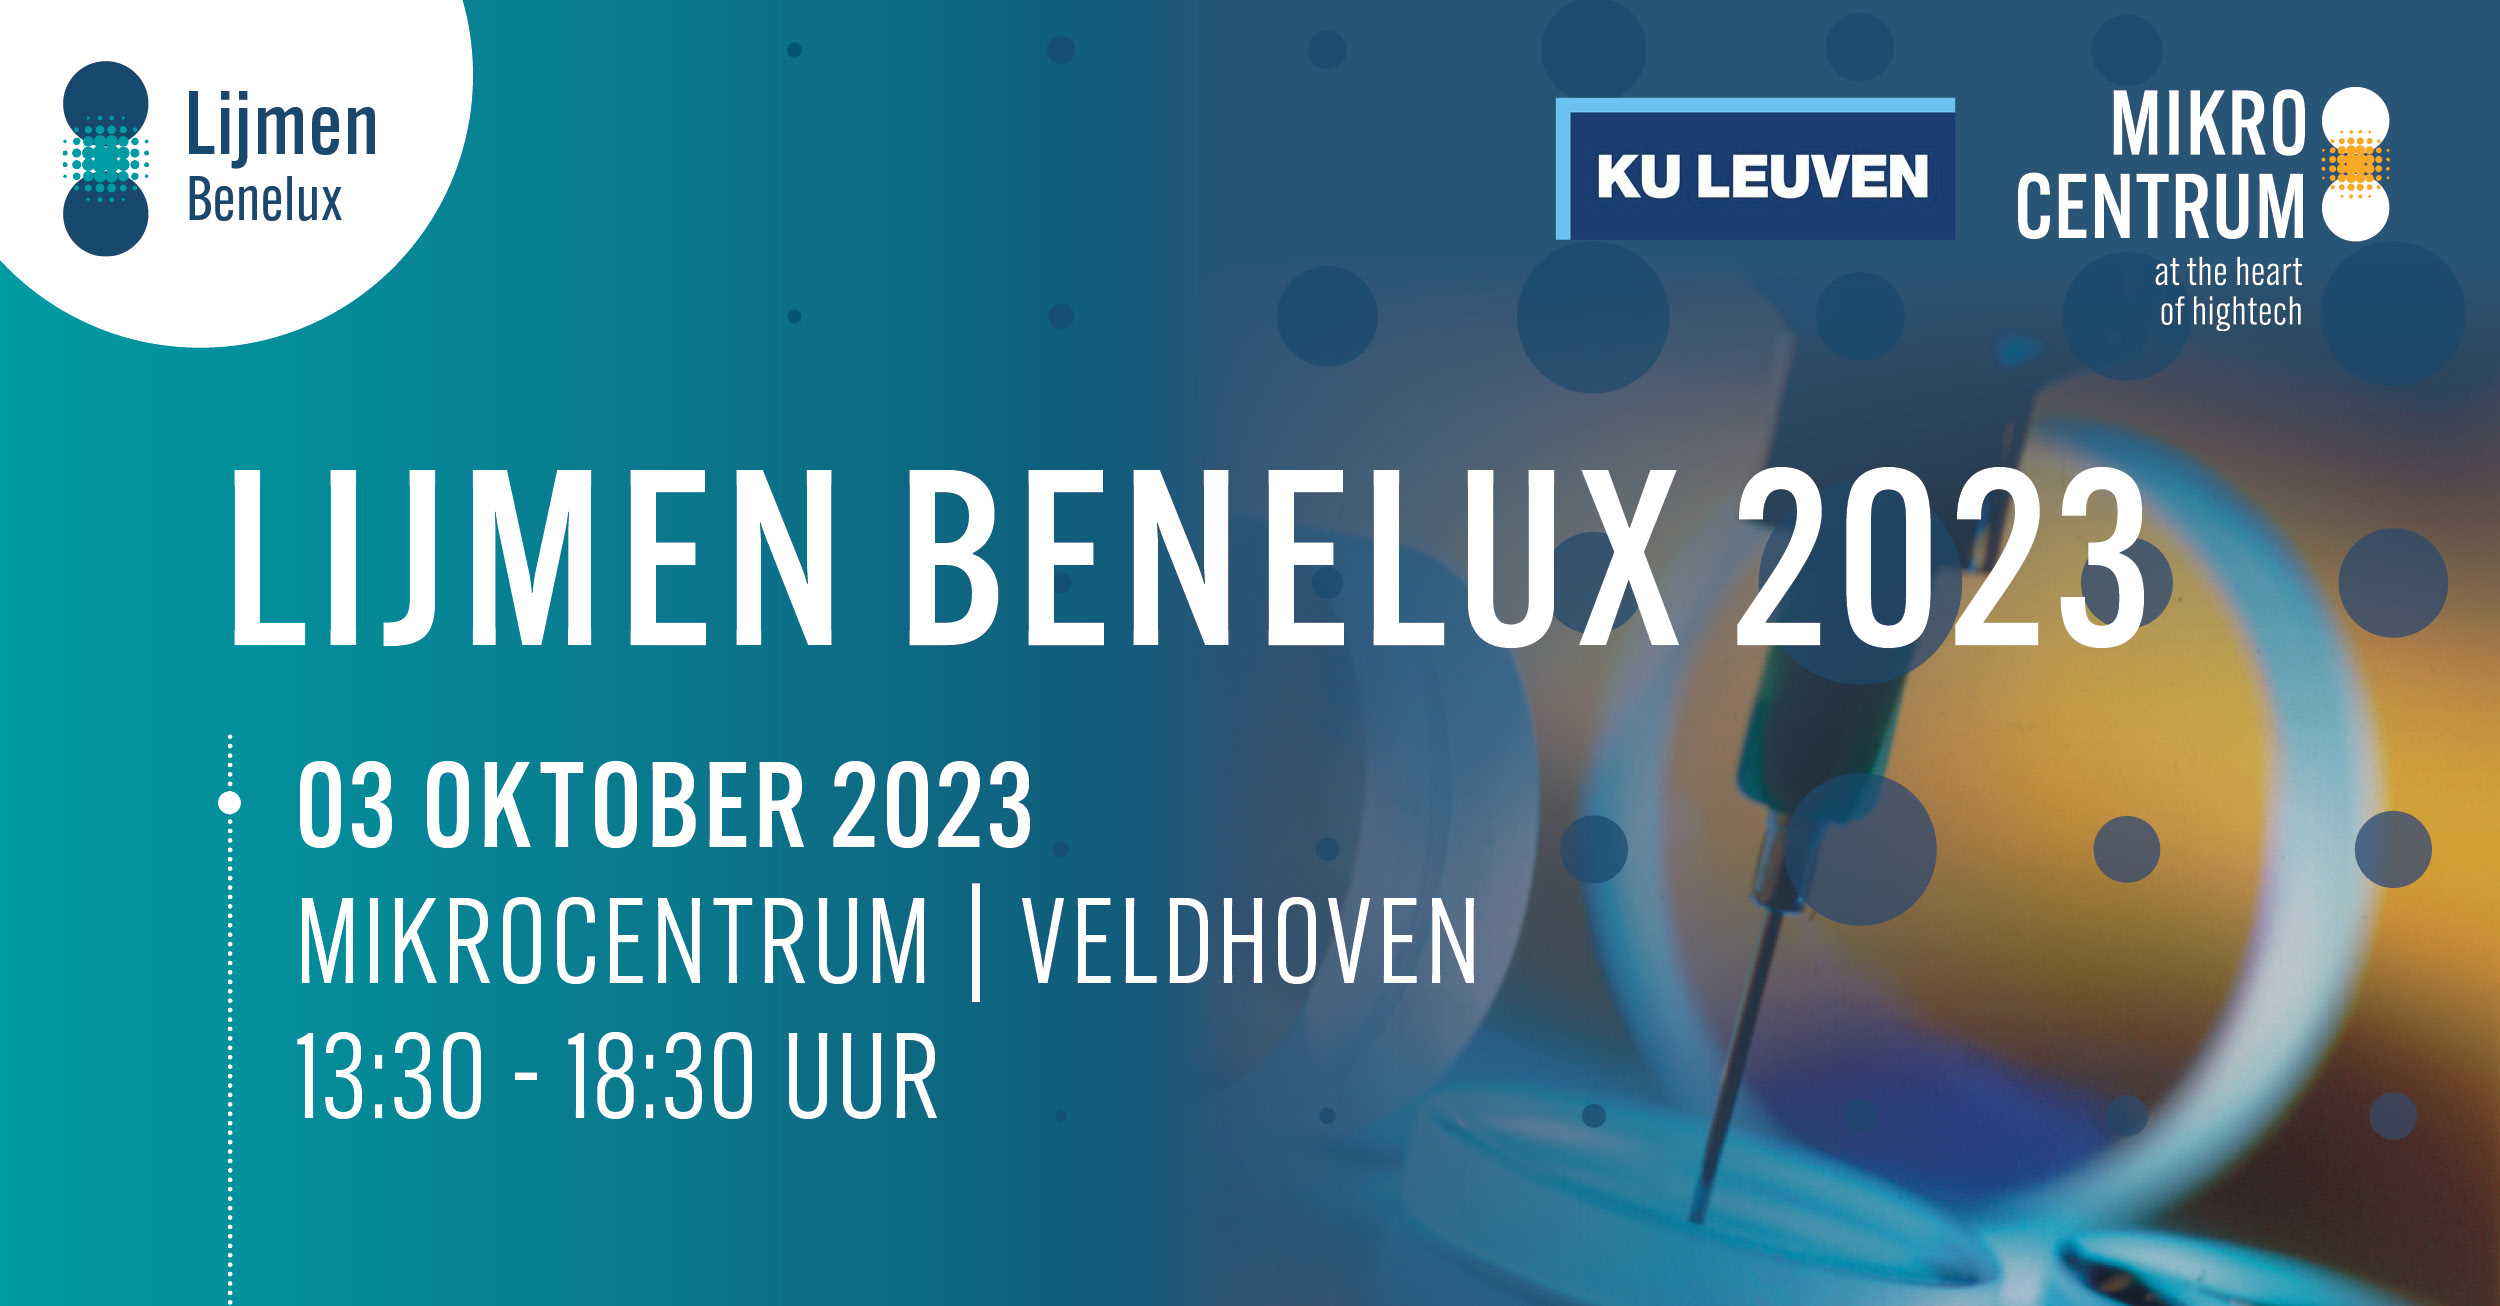 Lijmen Benelux 2023